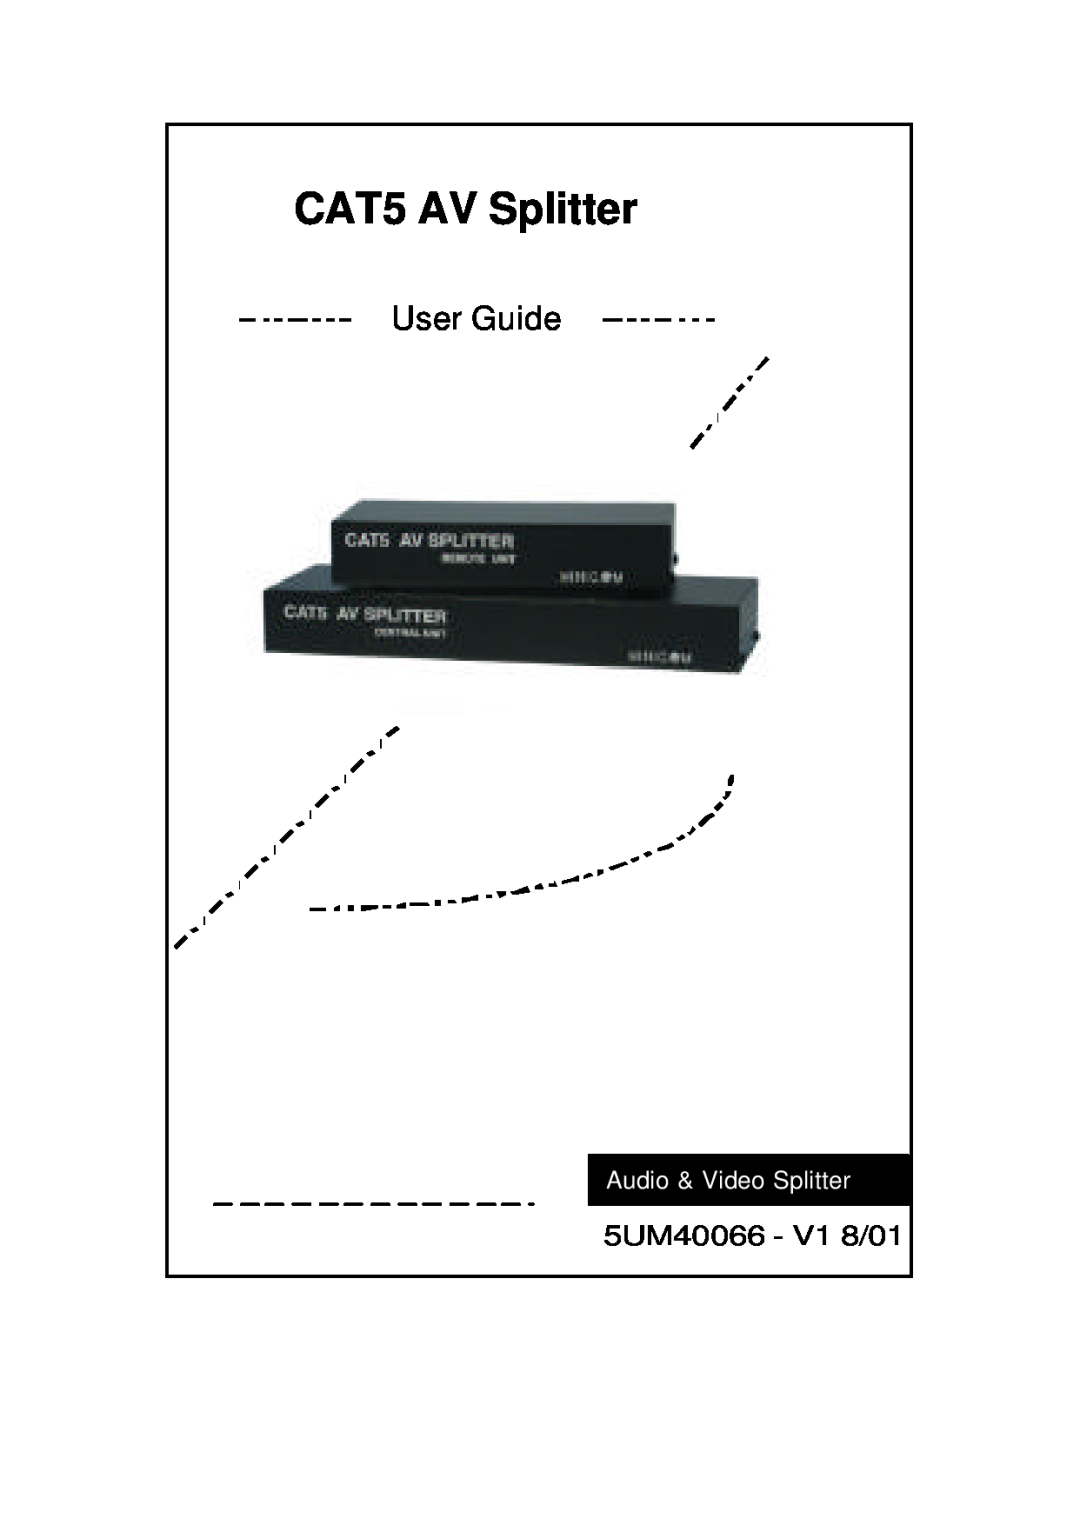 Minicom Advanced Systems 5UM40066 - V1 8/01 manual CAT5 AV Splitter, User Guide, Audio & Video Splitter 